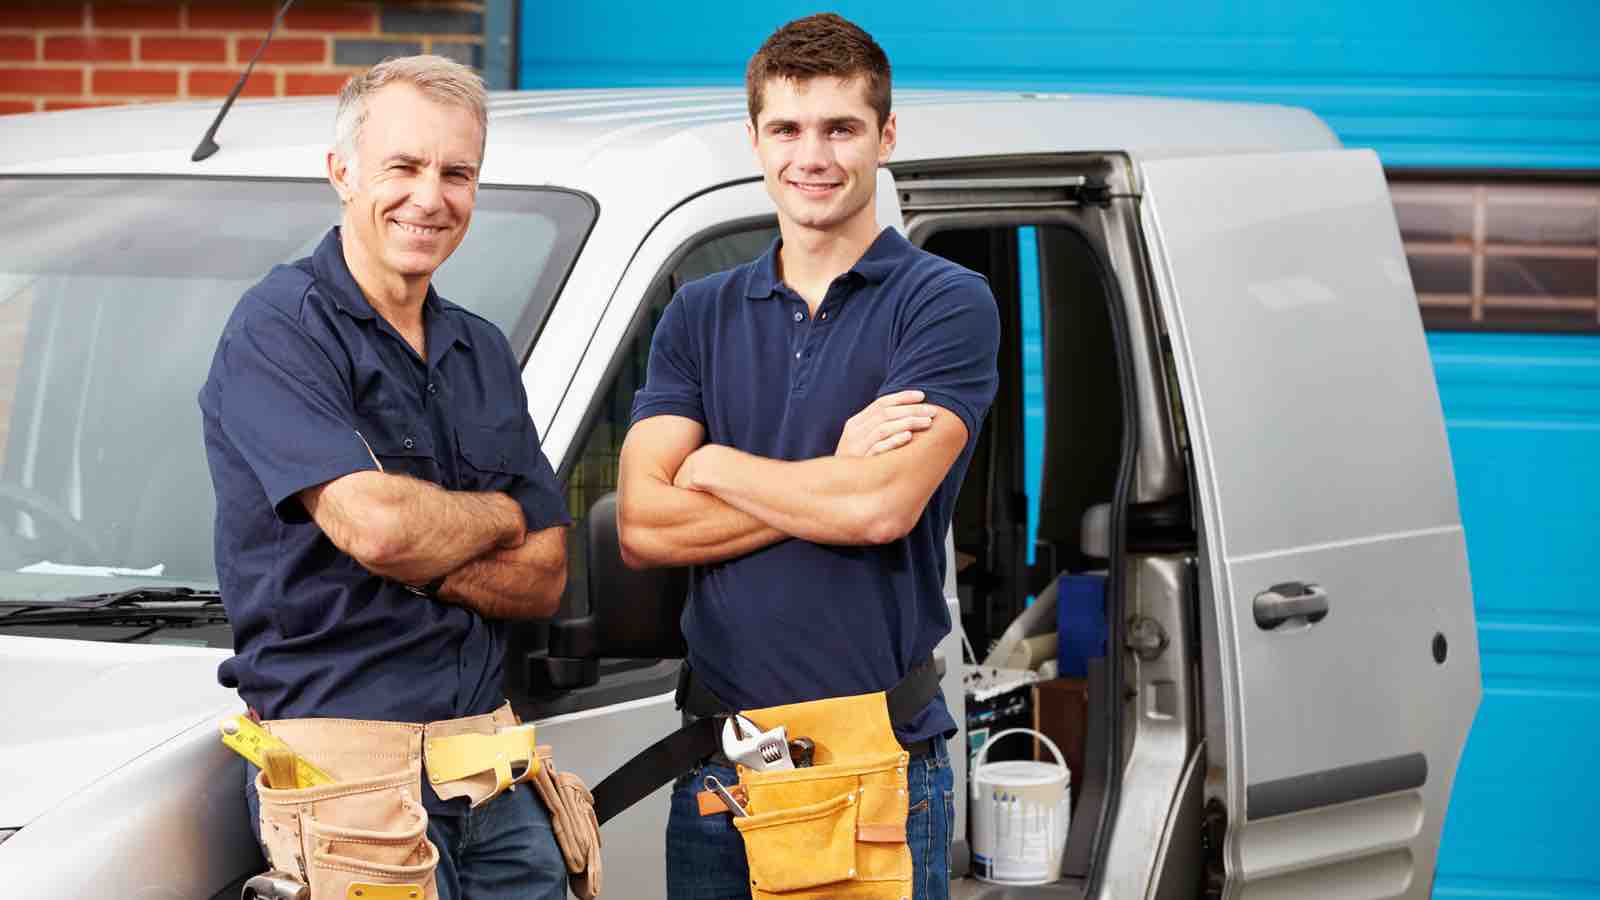 Contractor duo with a work van